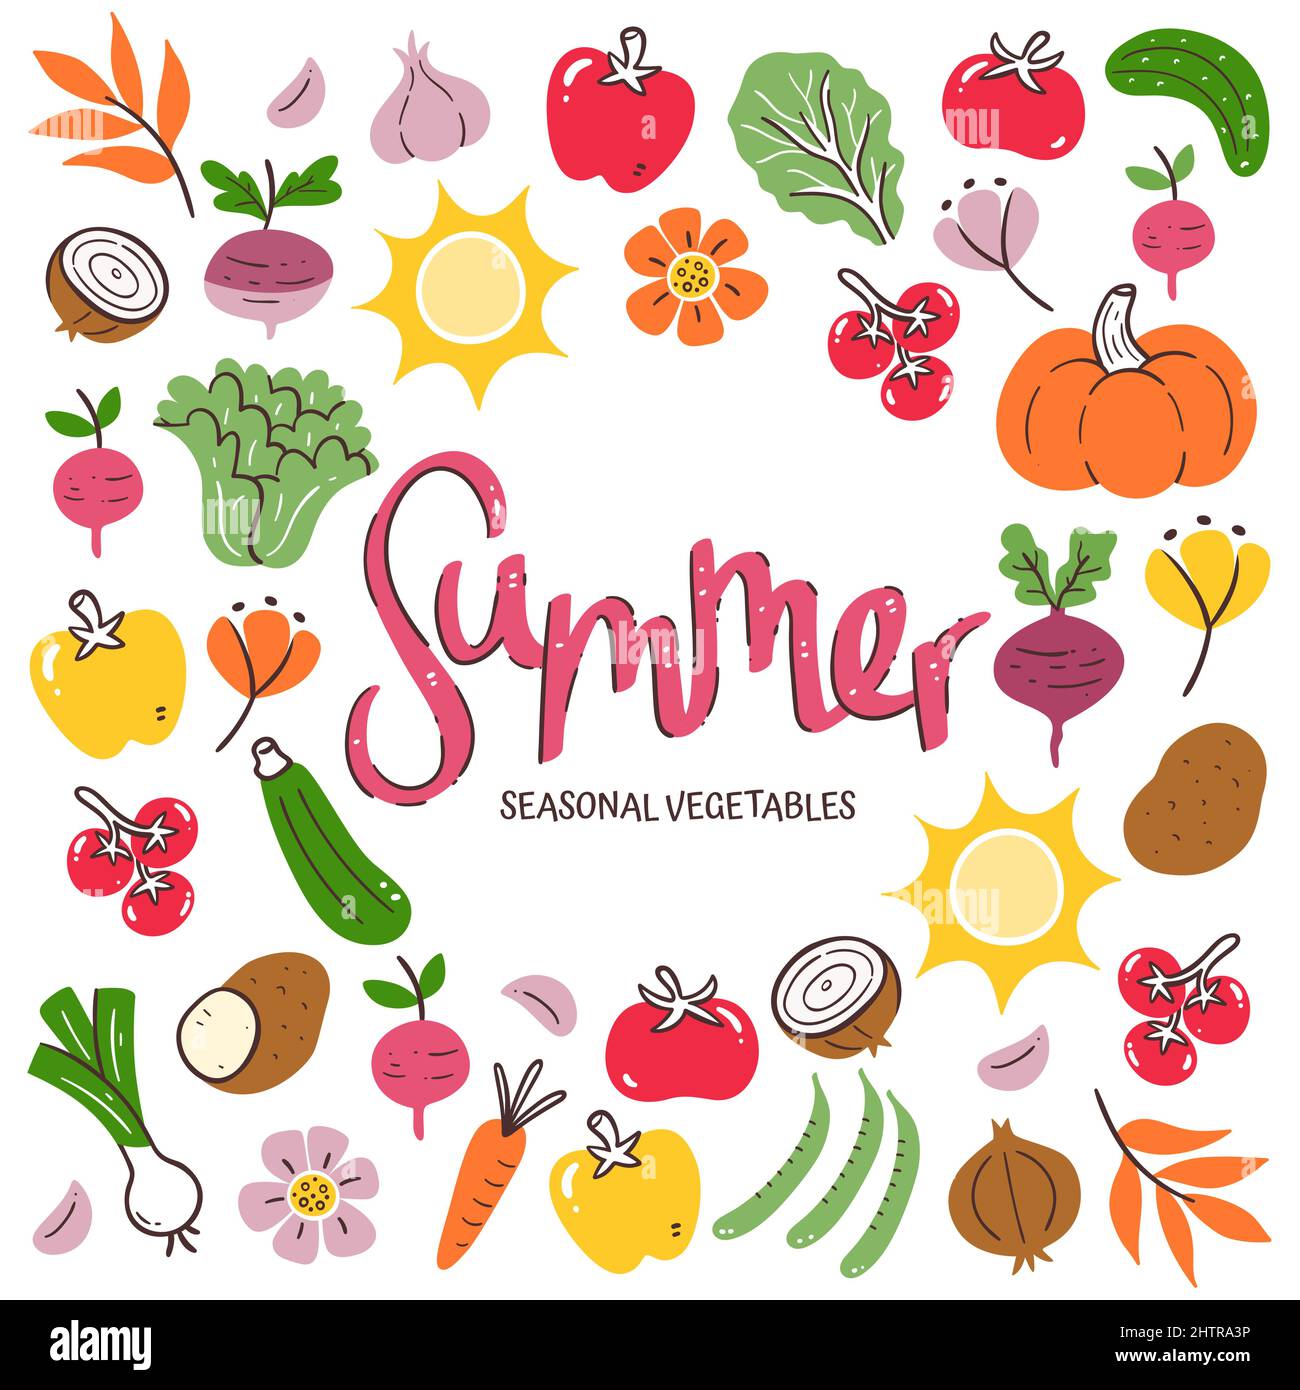 Saisonales Gemüse im Hintergrund. Sommergemüse Komposition aus bunten handgezeichneten Vektor-Icons, isoliert auf weißem Hintergrund. Stock Vektor